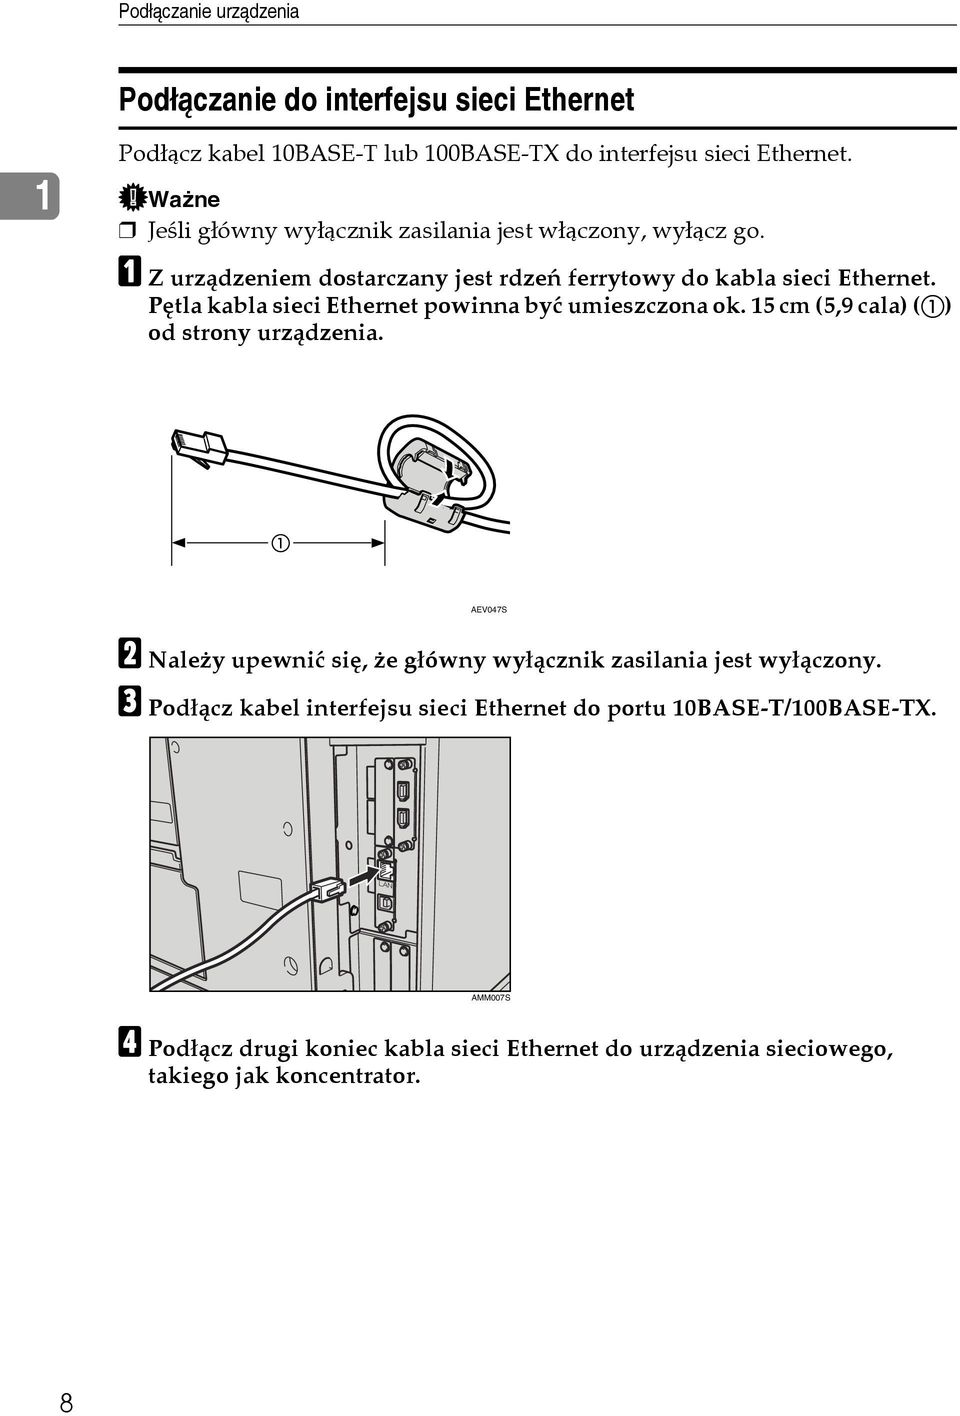 Pêtla kabla sieci Ethernet powinna byæ umieszczona ok. 15 cm (5,9 cala) (A) od strony urzàdzenia.